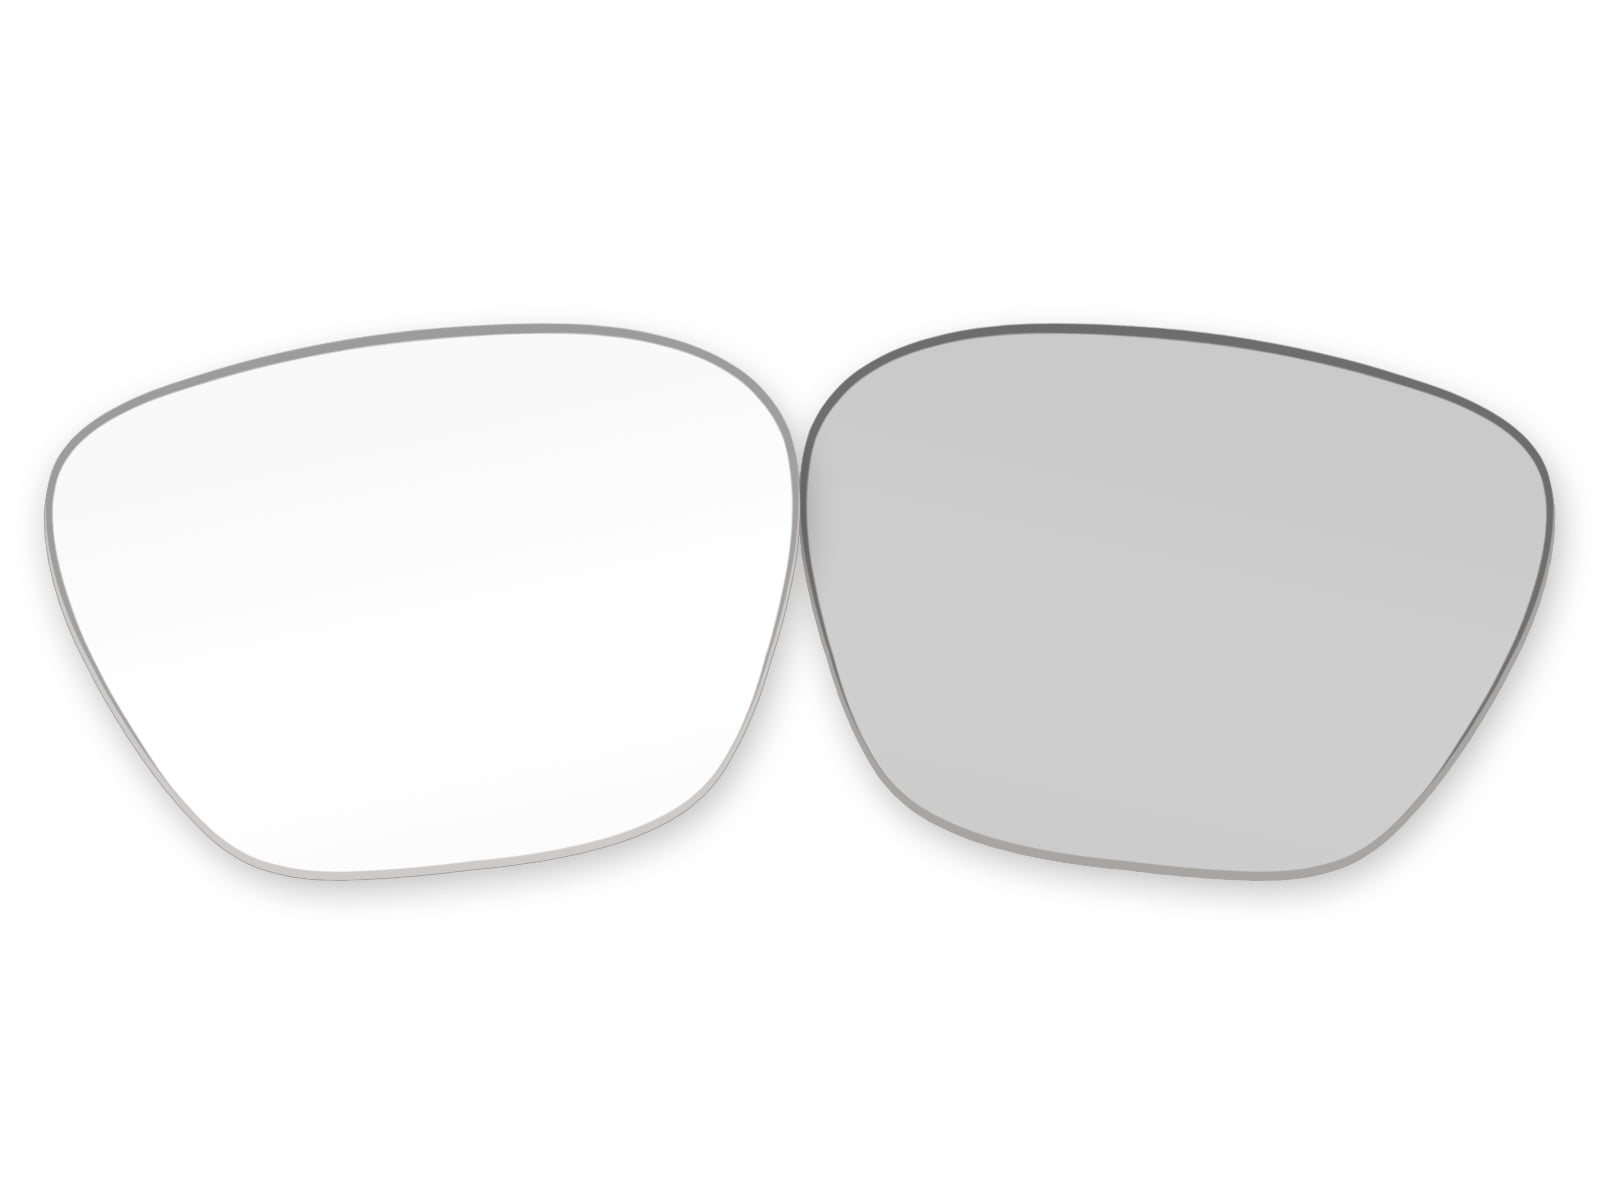 LenzPower Replacement POLARIZED Lenses for Alto M L Sunglasses Chioces